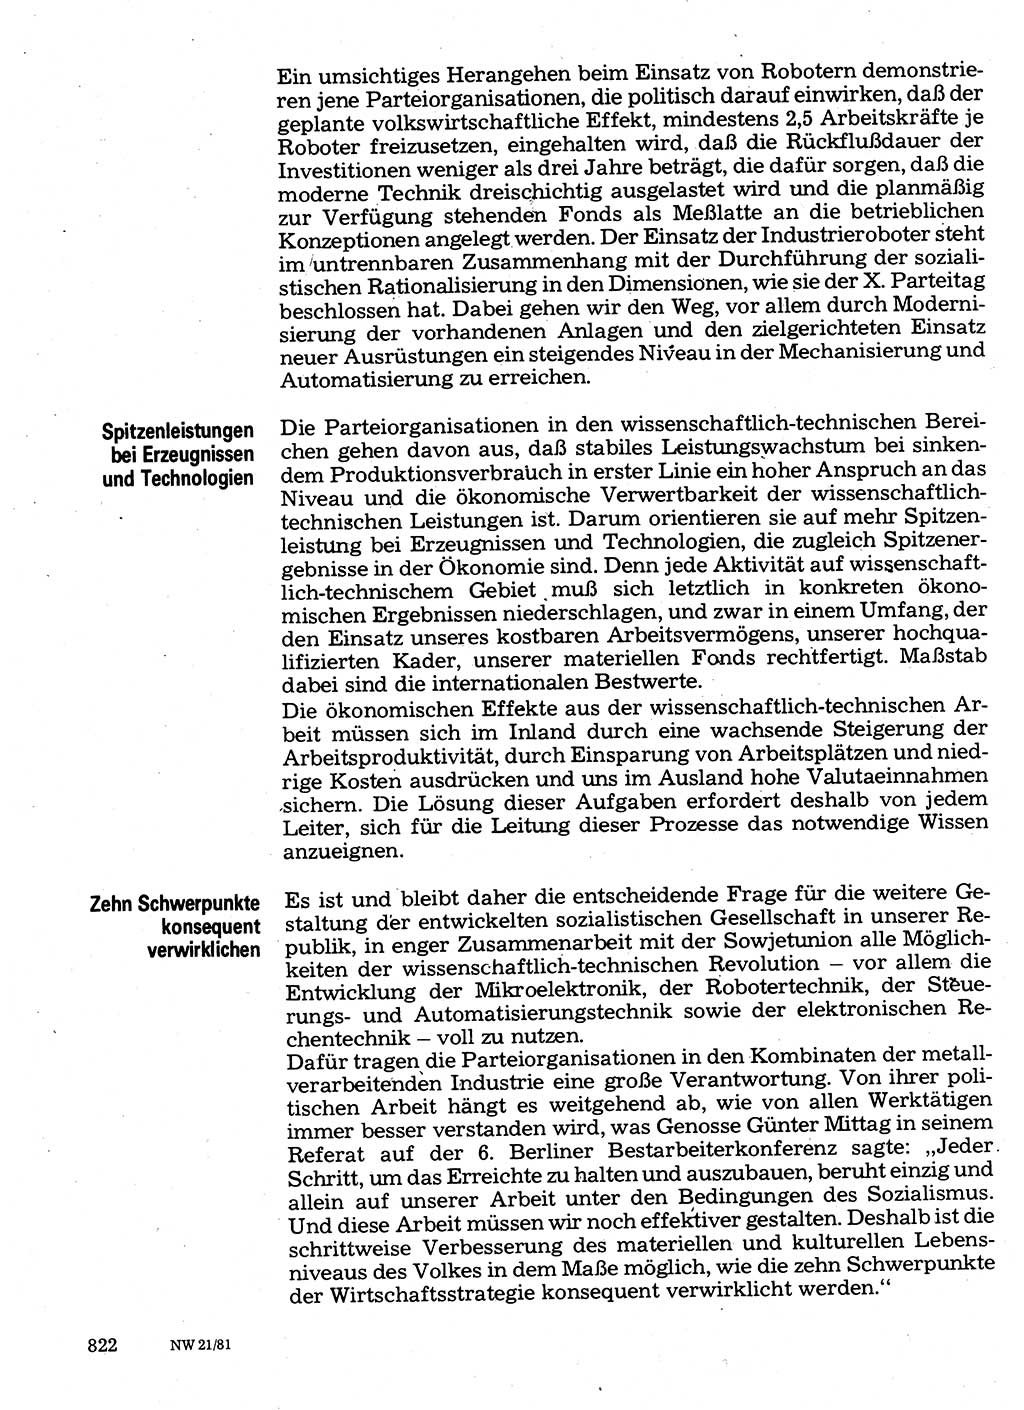 Neuer Weg (NW), Organ des Zentralkomitees (ZK) der SED (Sozialistische Einheitspartei Deutschlands) für Fragen des Parteilebens, 36. Jahrgang [Deutsche Demokratische Republik (DDR)] 1981, Seite 822 (NW ZK SED DDR 1981, S. 822)